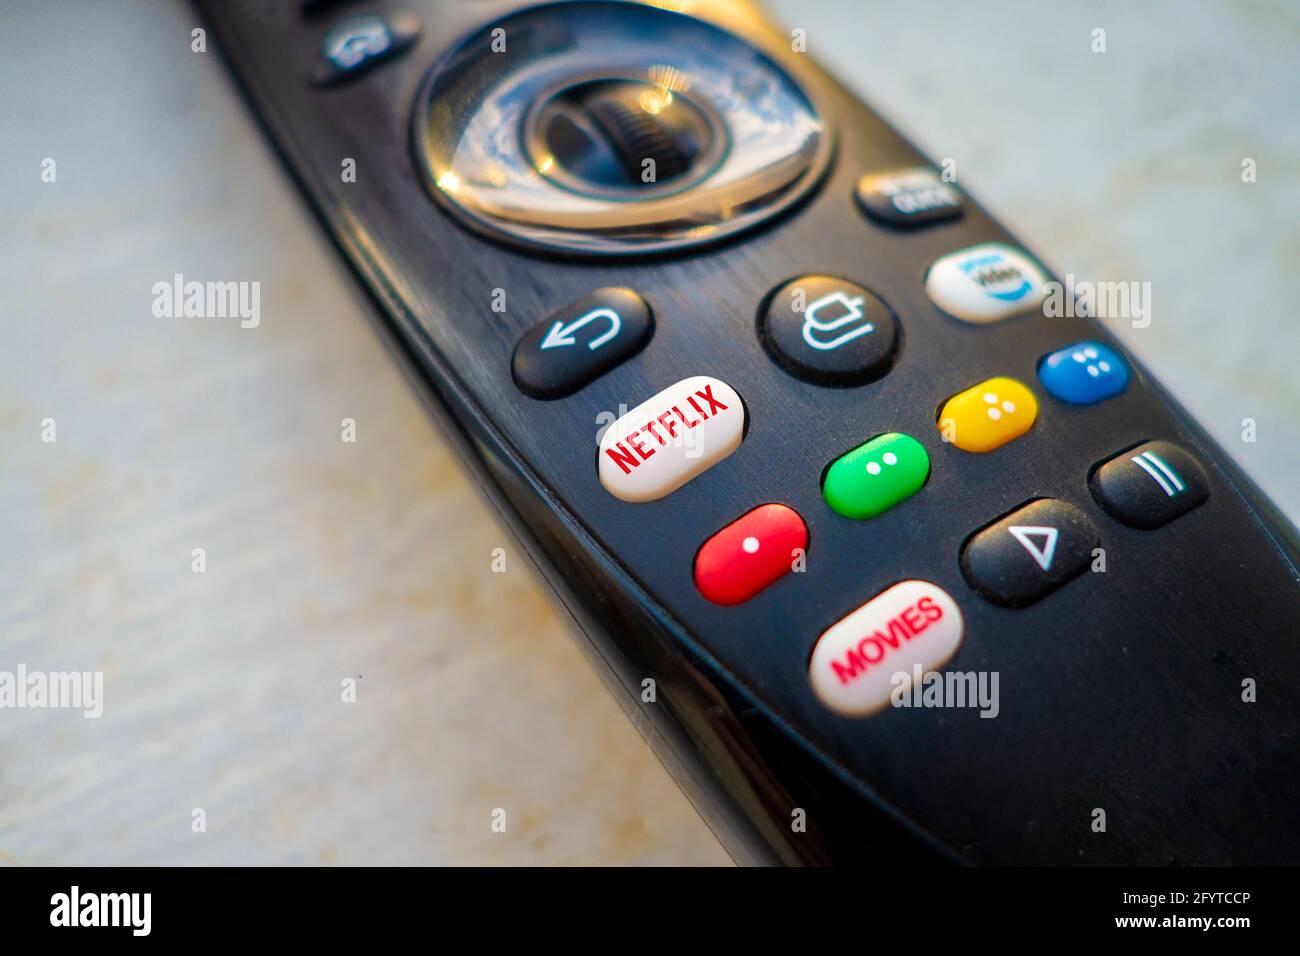 Touche blanche rouge Netflix de la télécommande du téléviseur Banque D'Images